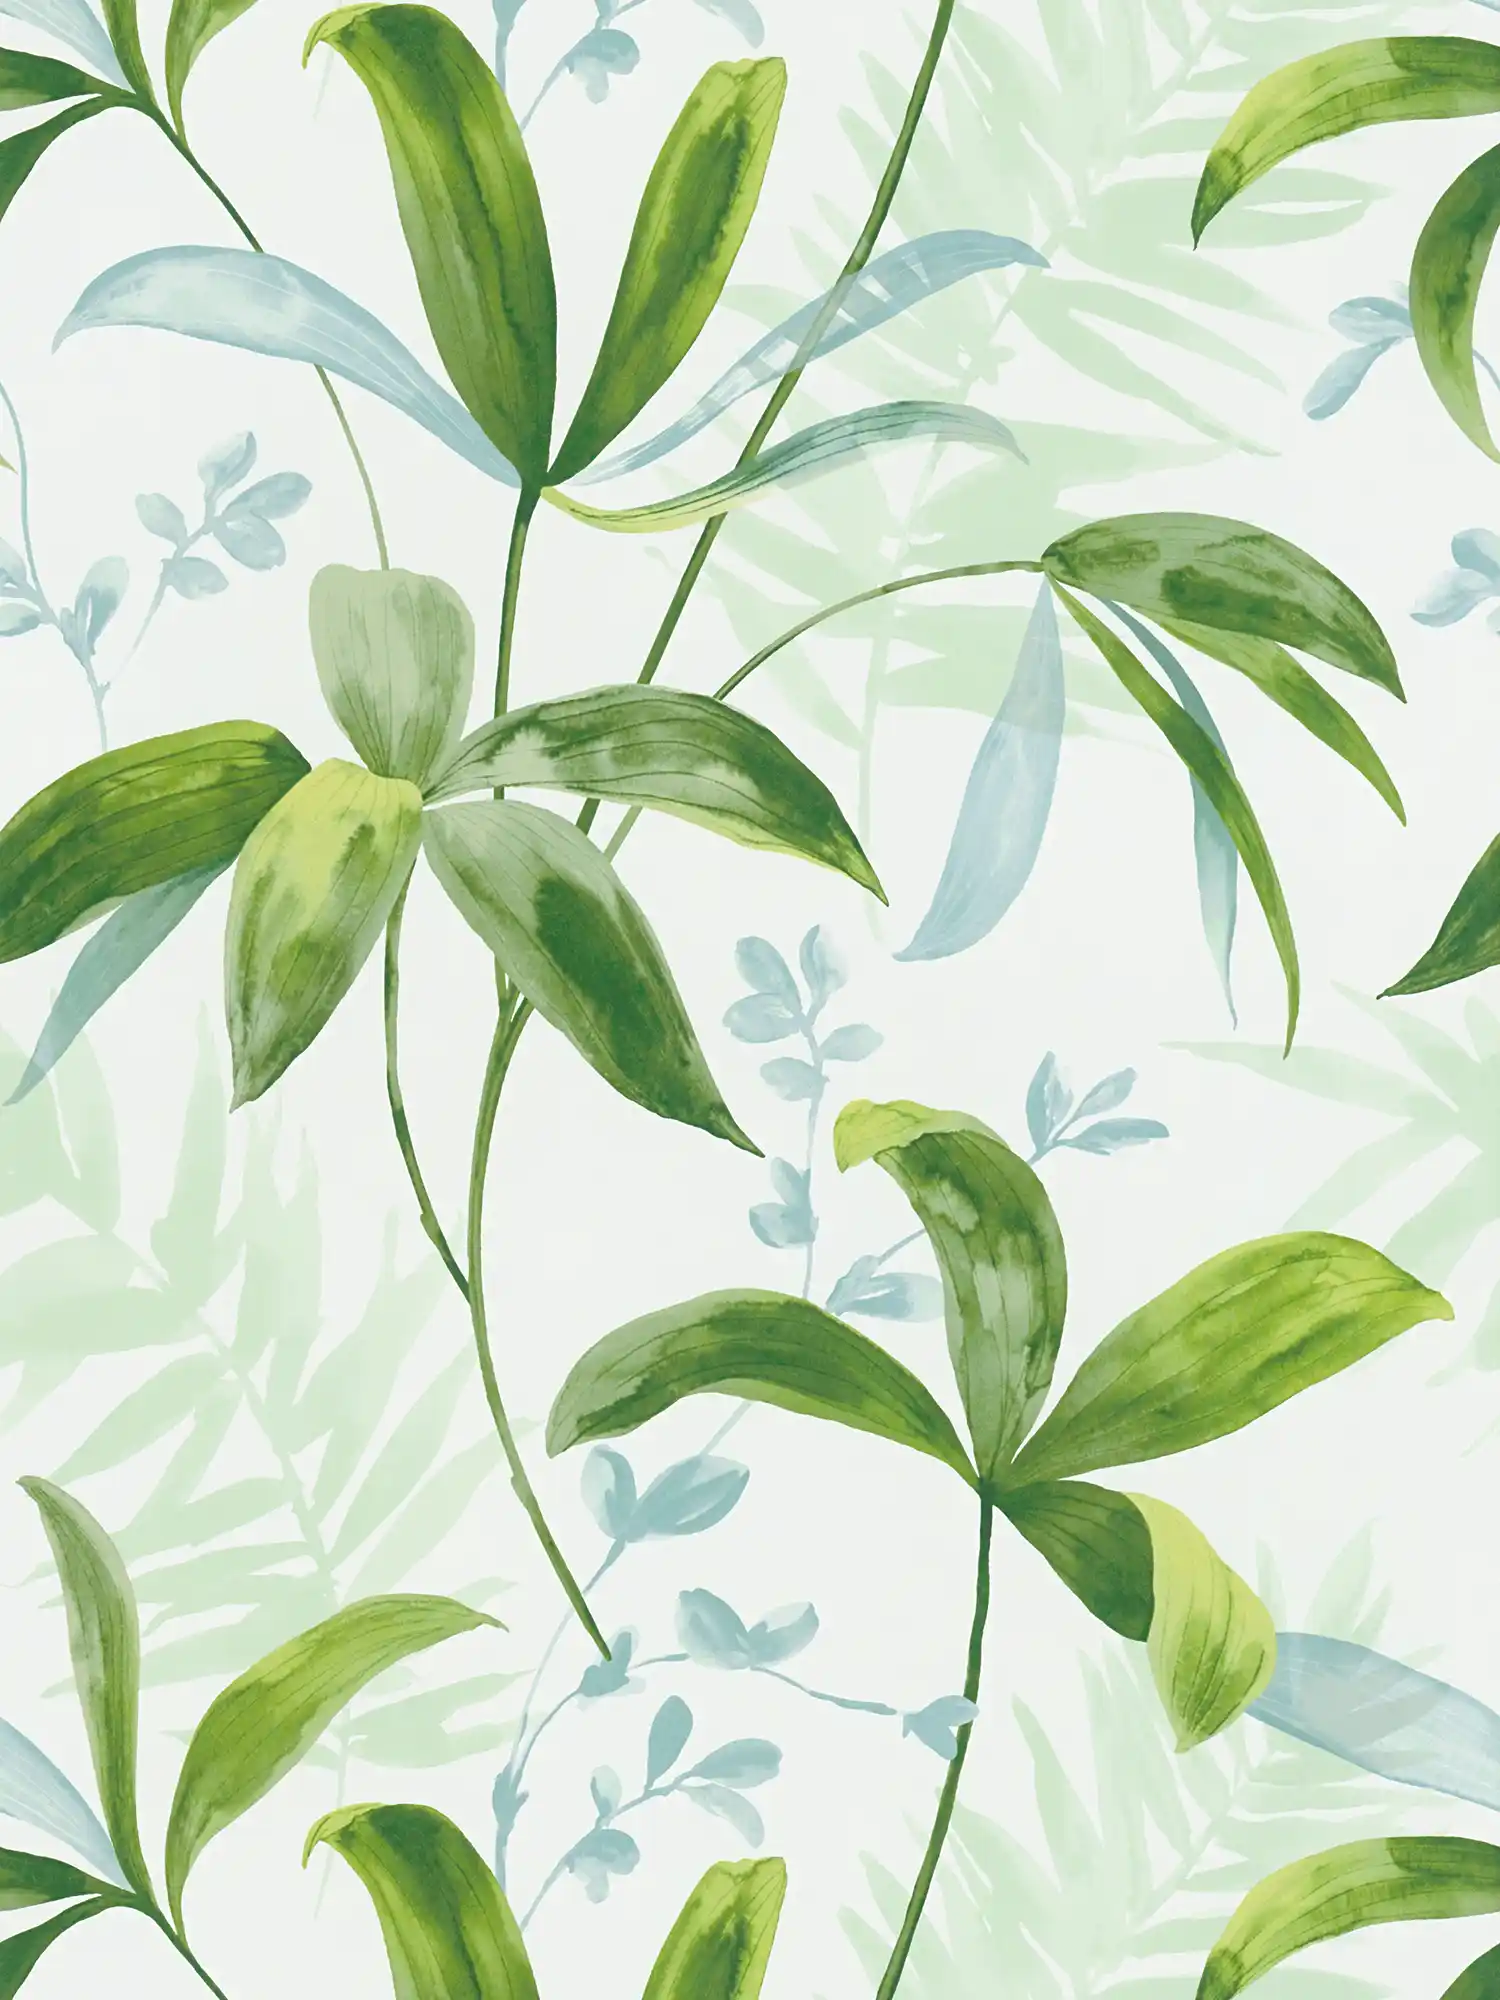 Vliestapete grüne Blätter im Aquarell Stil – Grün, Weiß
